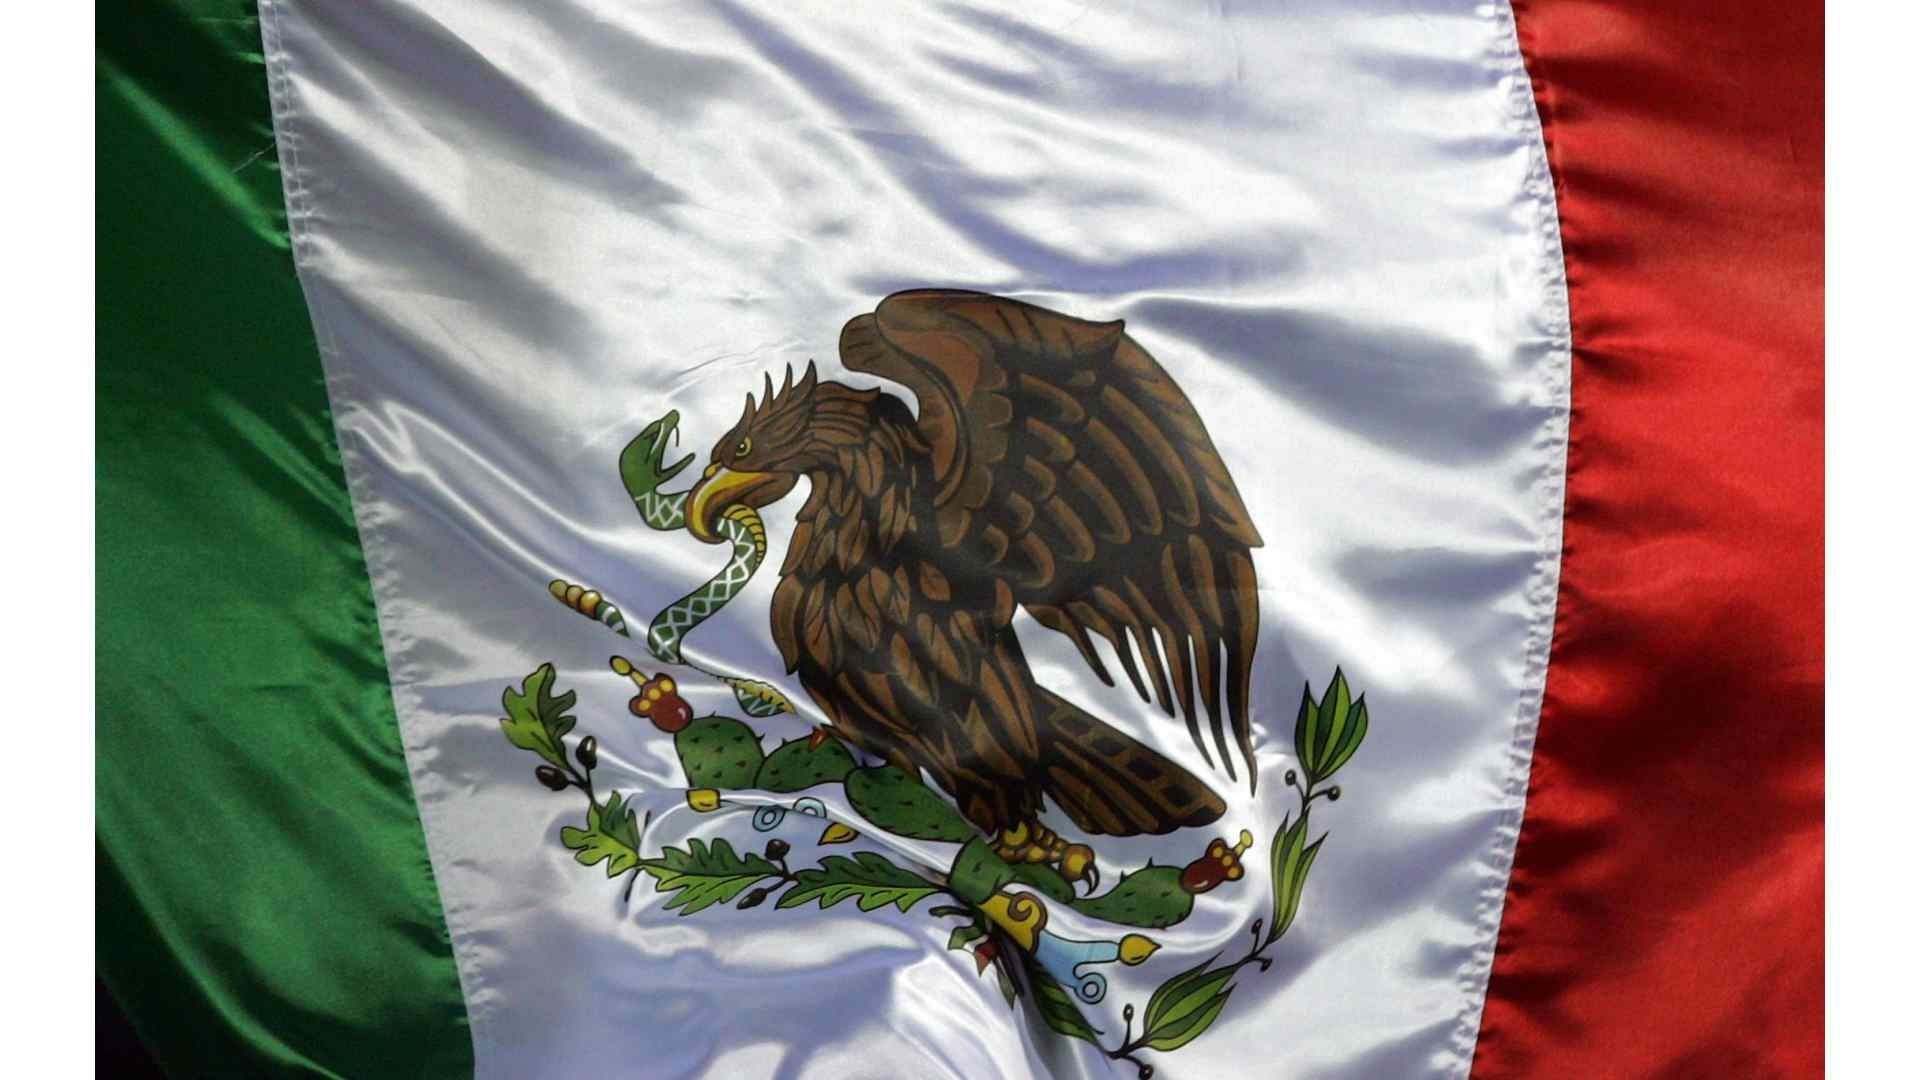 En México la bandera tiene ciertos usos que están prohibidos